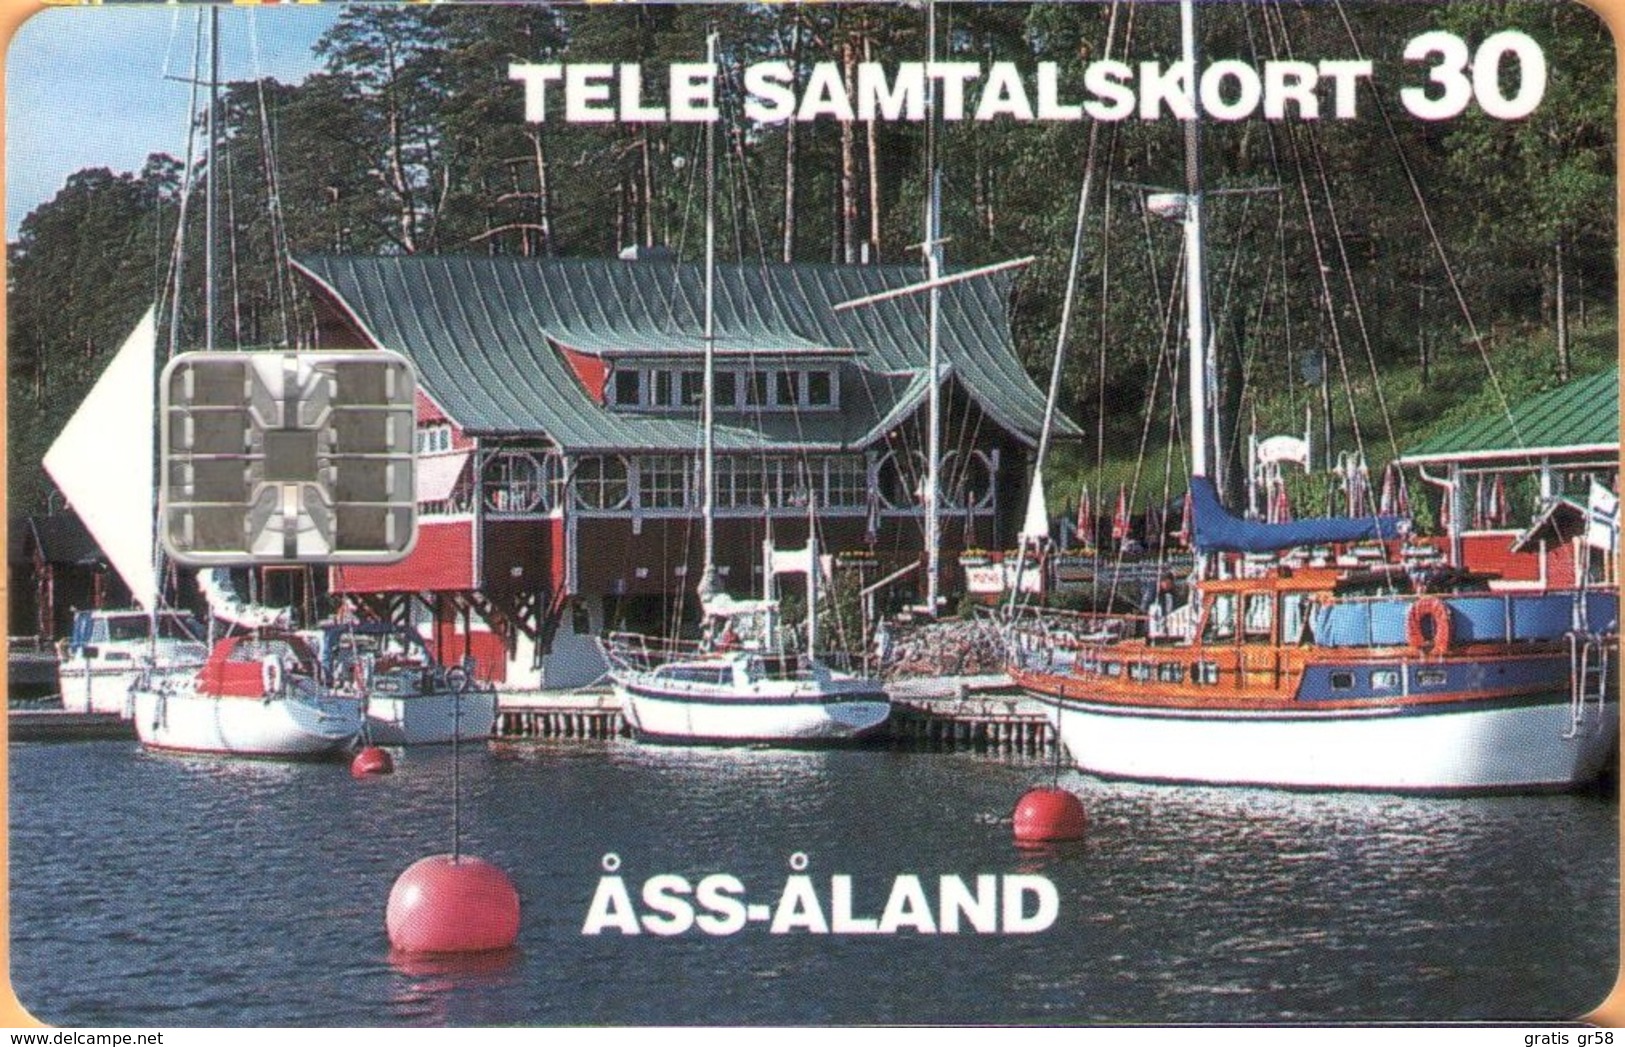 Aland - AX-ALP-0010A, Åss-Åland - Optimist Worlds 1995 (Without CN), 12.000ex, 9/94, Mint - Aland